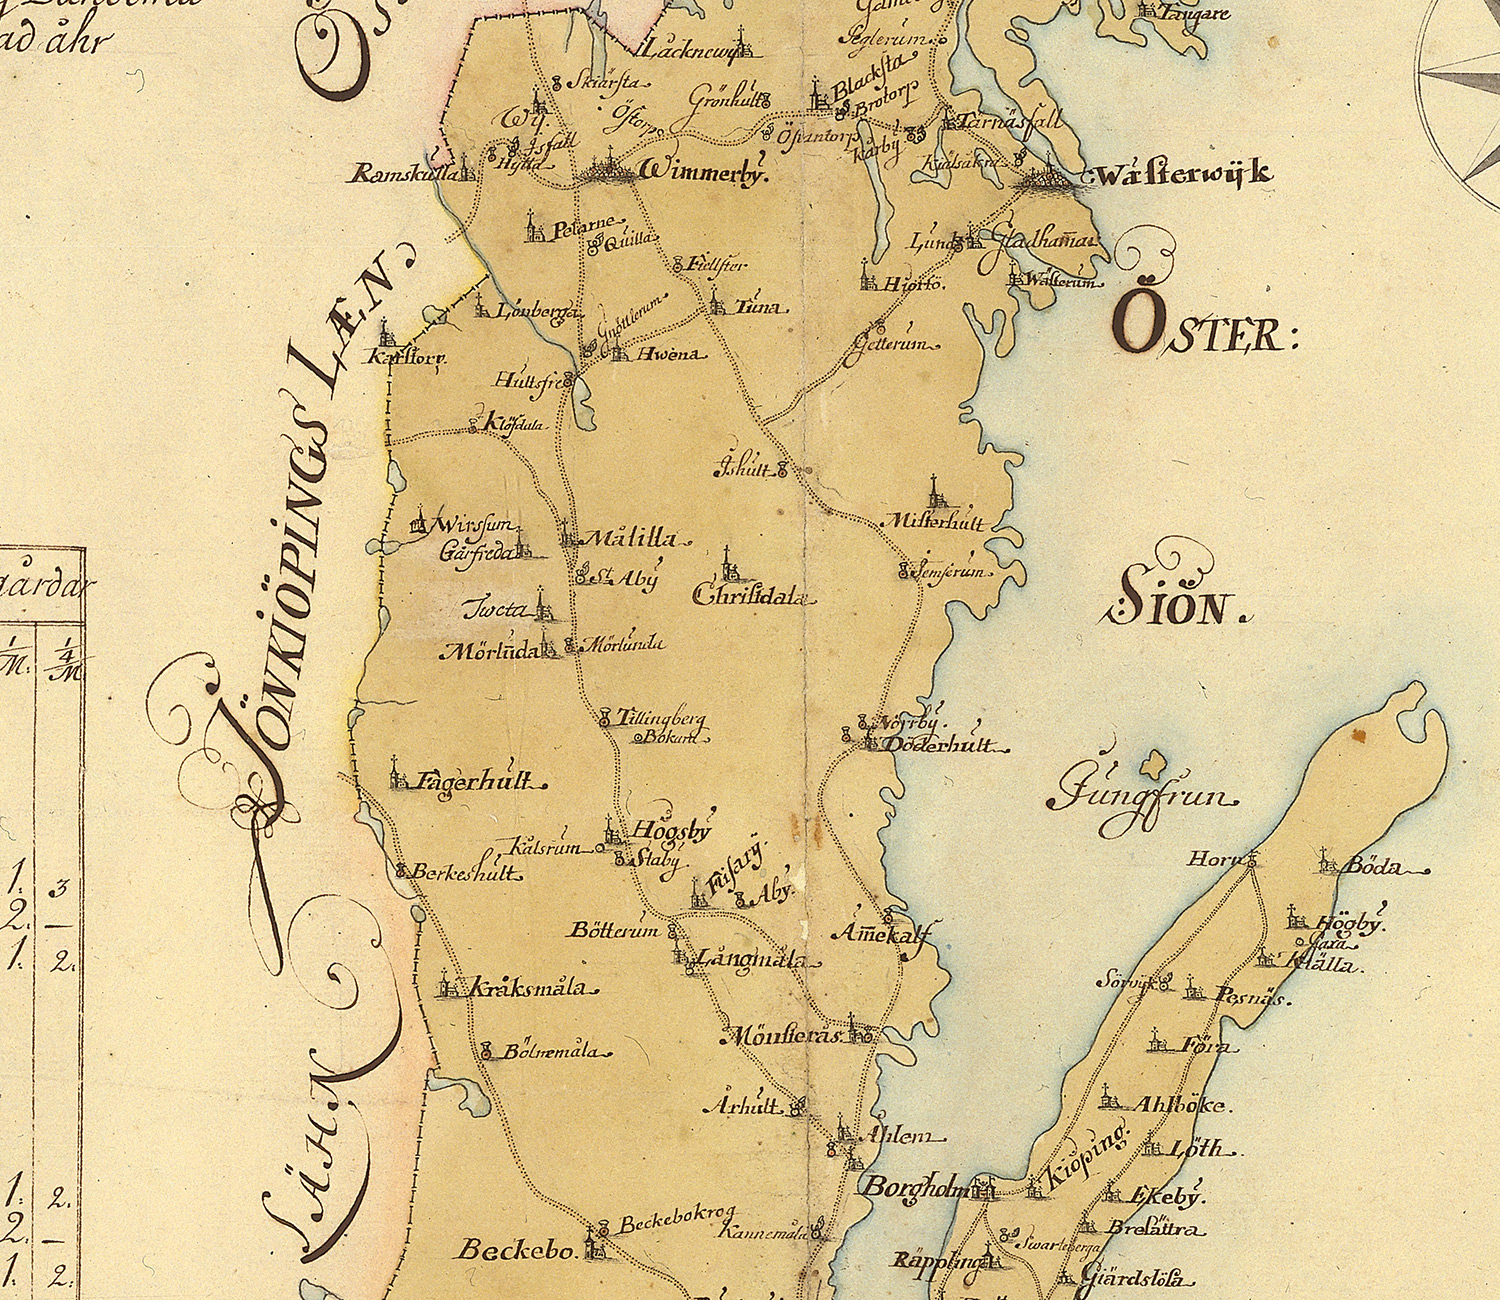 Vägkarta över Kalmar län 1731 - Släktled